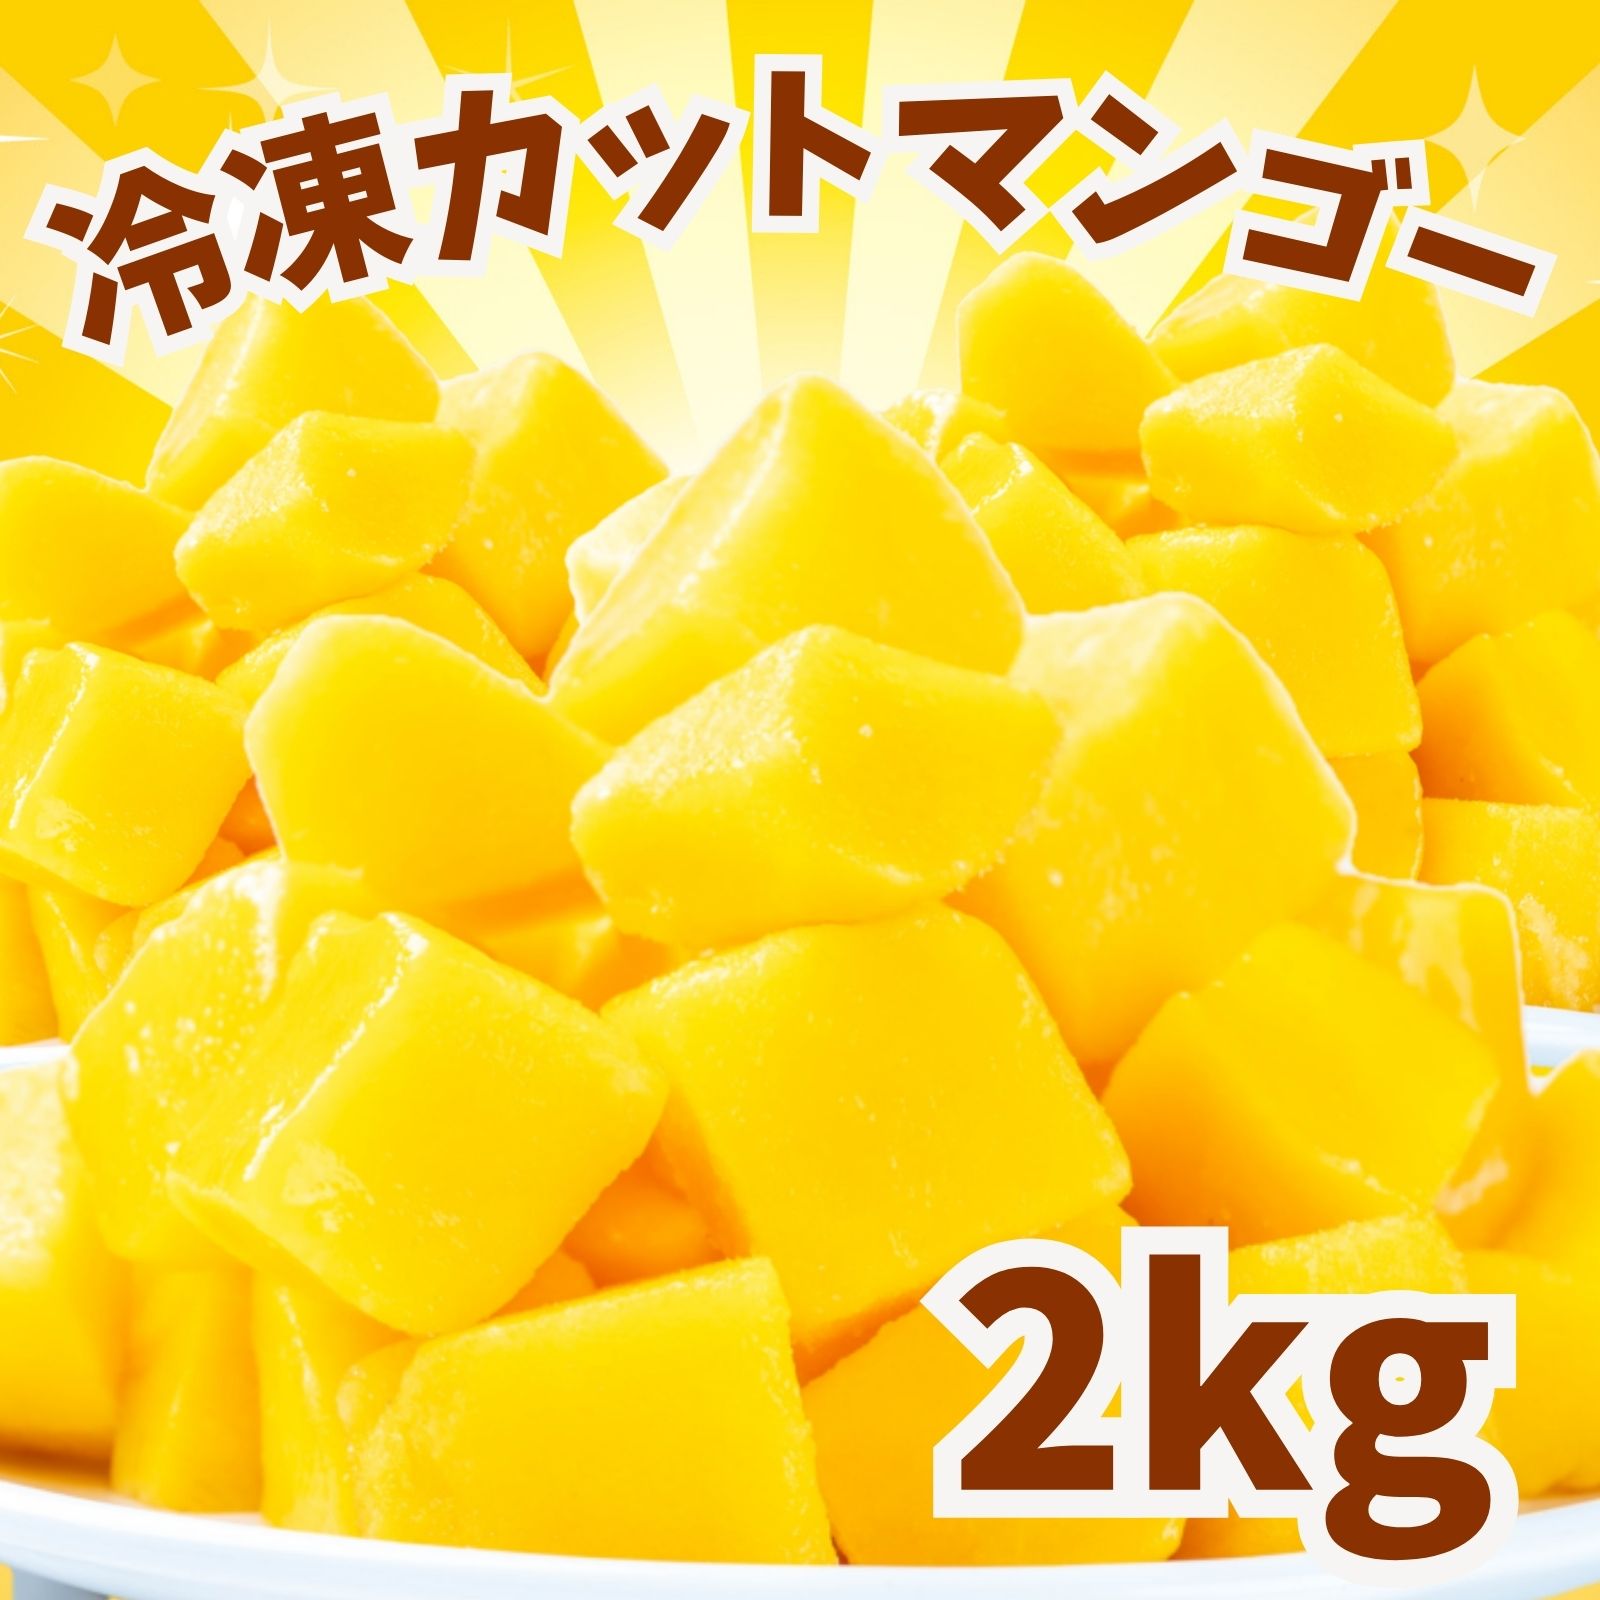 冷凍マンゴー 2kg 業務用 カット済み アップルマンゴー 冷凍フルーツ 冷凍 マンゴー 砂糖不使用 無添加 送料無料